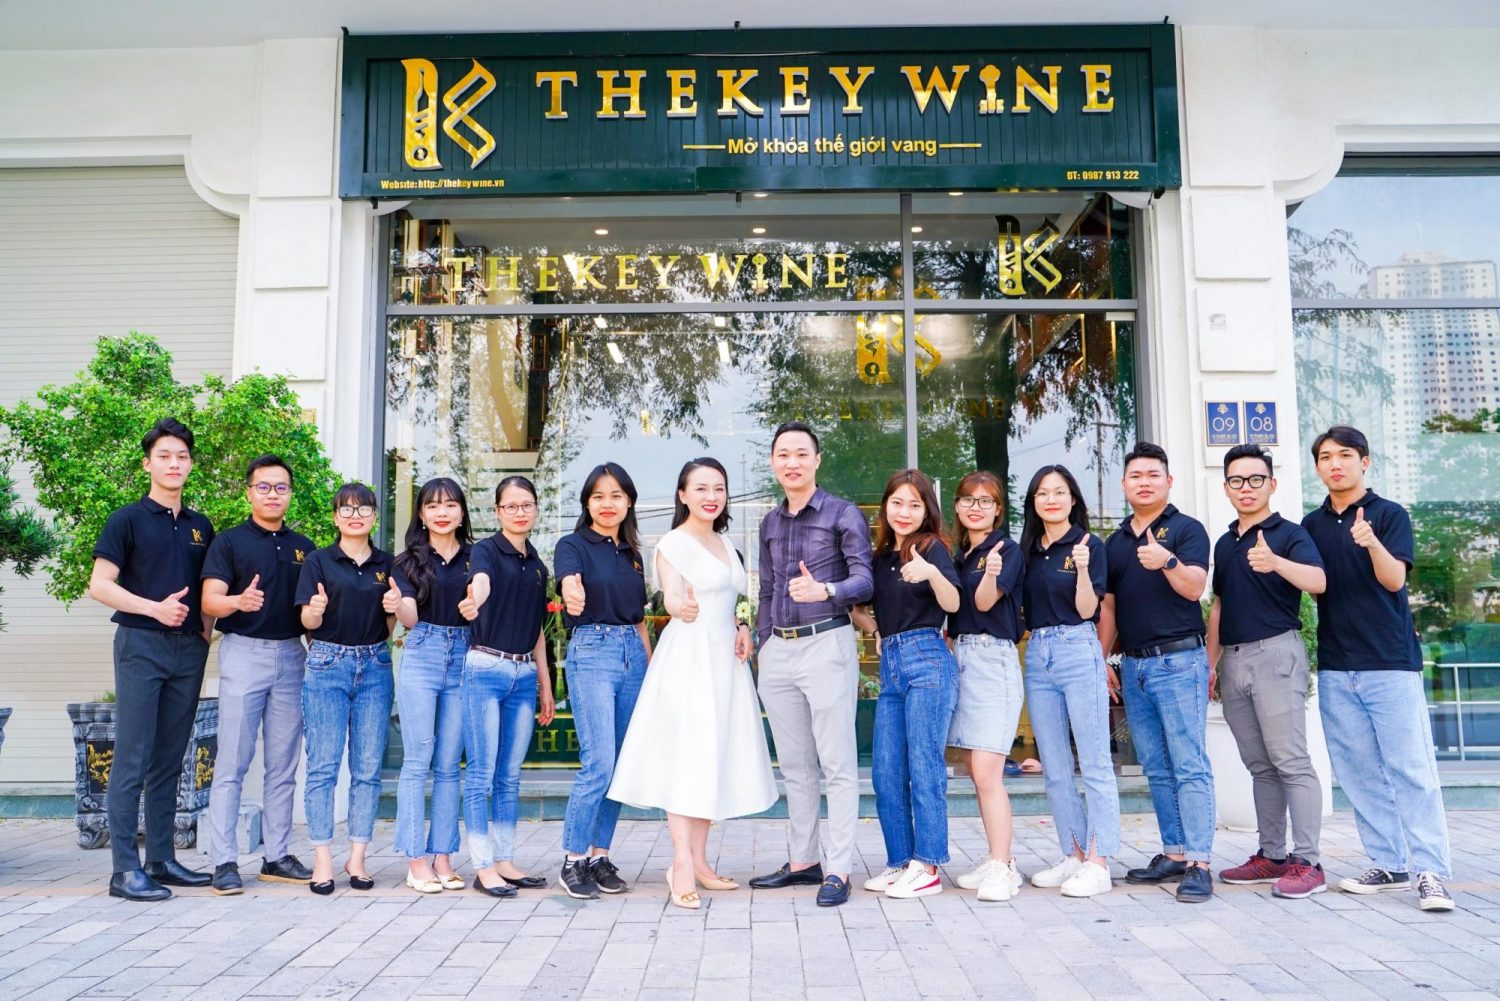 TheKey Wine - Địa chỉ mua rượu vang uy tín và tận tâm "SỐ 1" trên thị trường 4